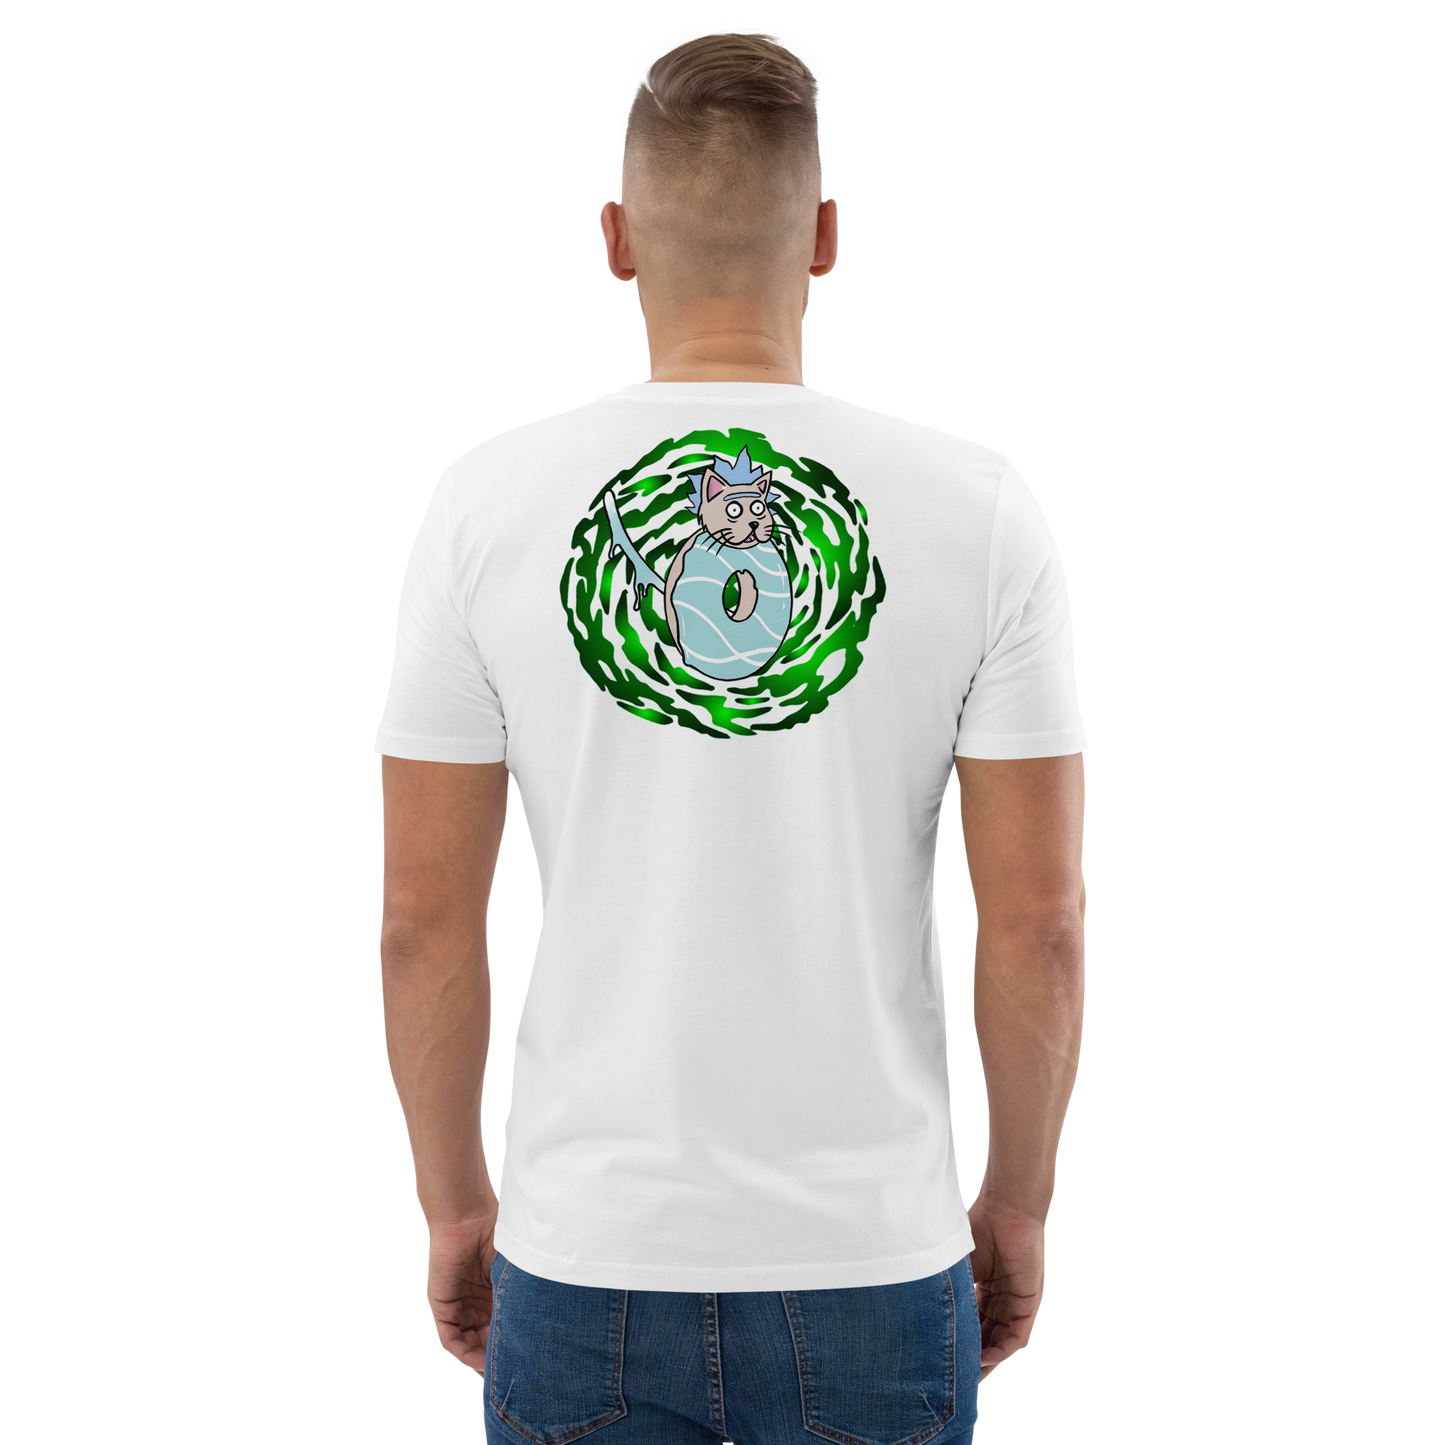 feat cr.em.y - Unisex organic cotton t-shirt REAR PRINT